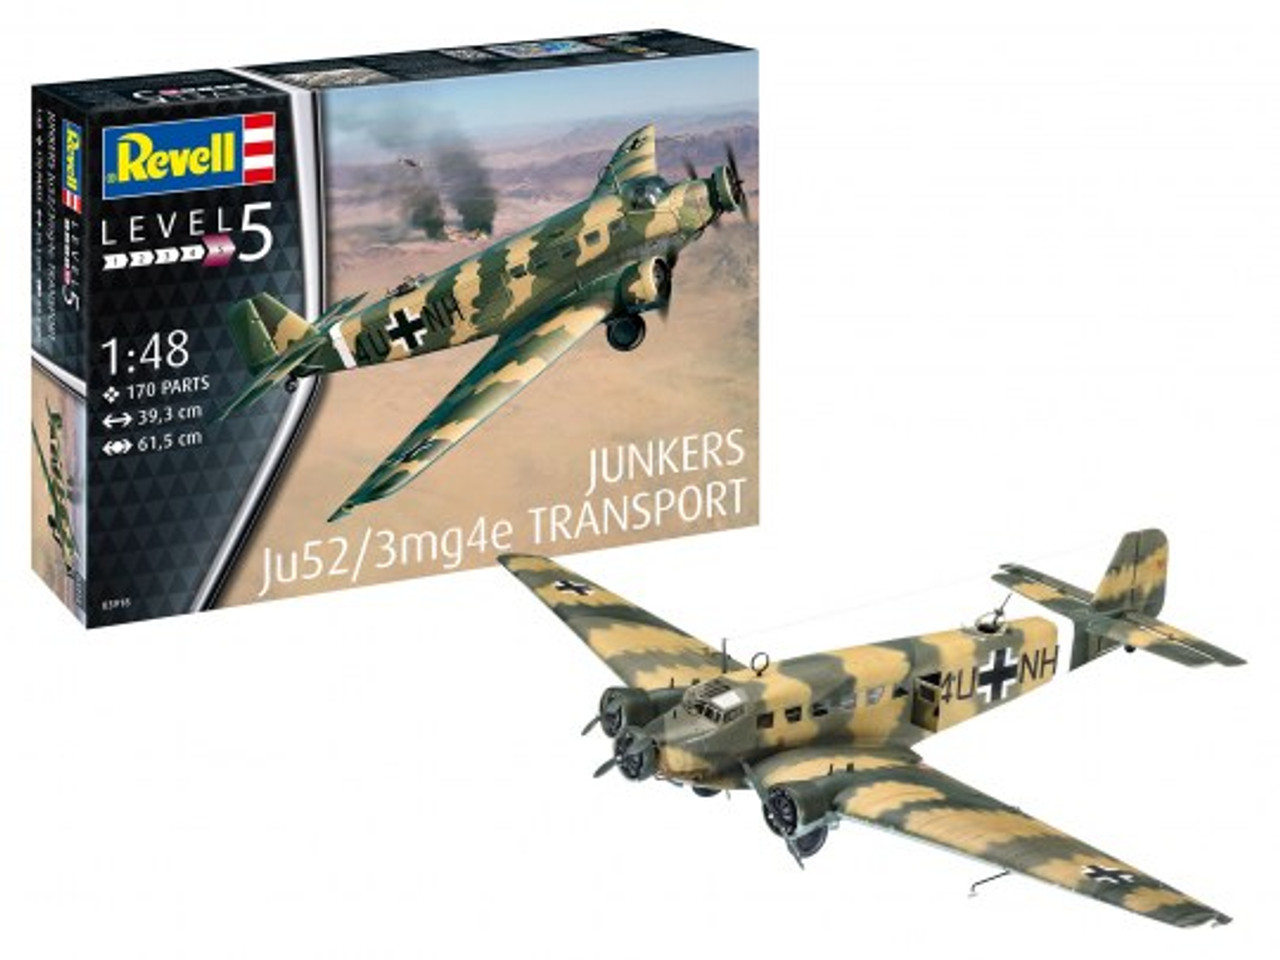 Revell 0318 1/48 Junkers Ju52/3m Transport Plastic Model Kit